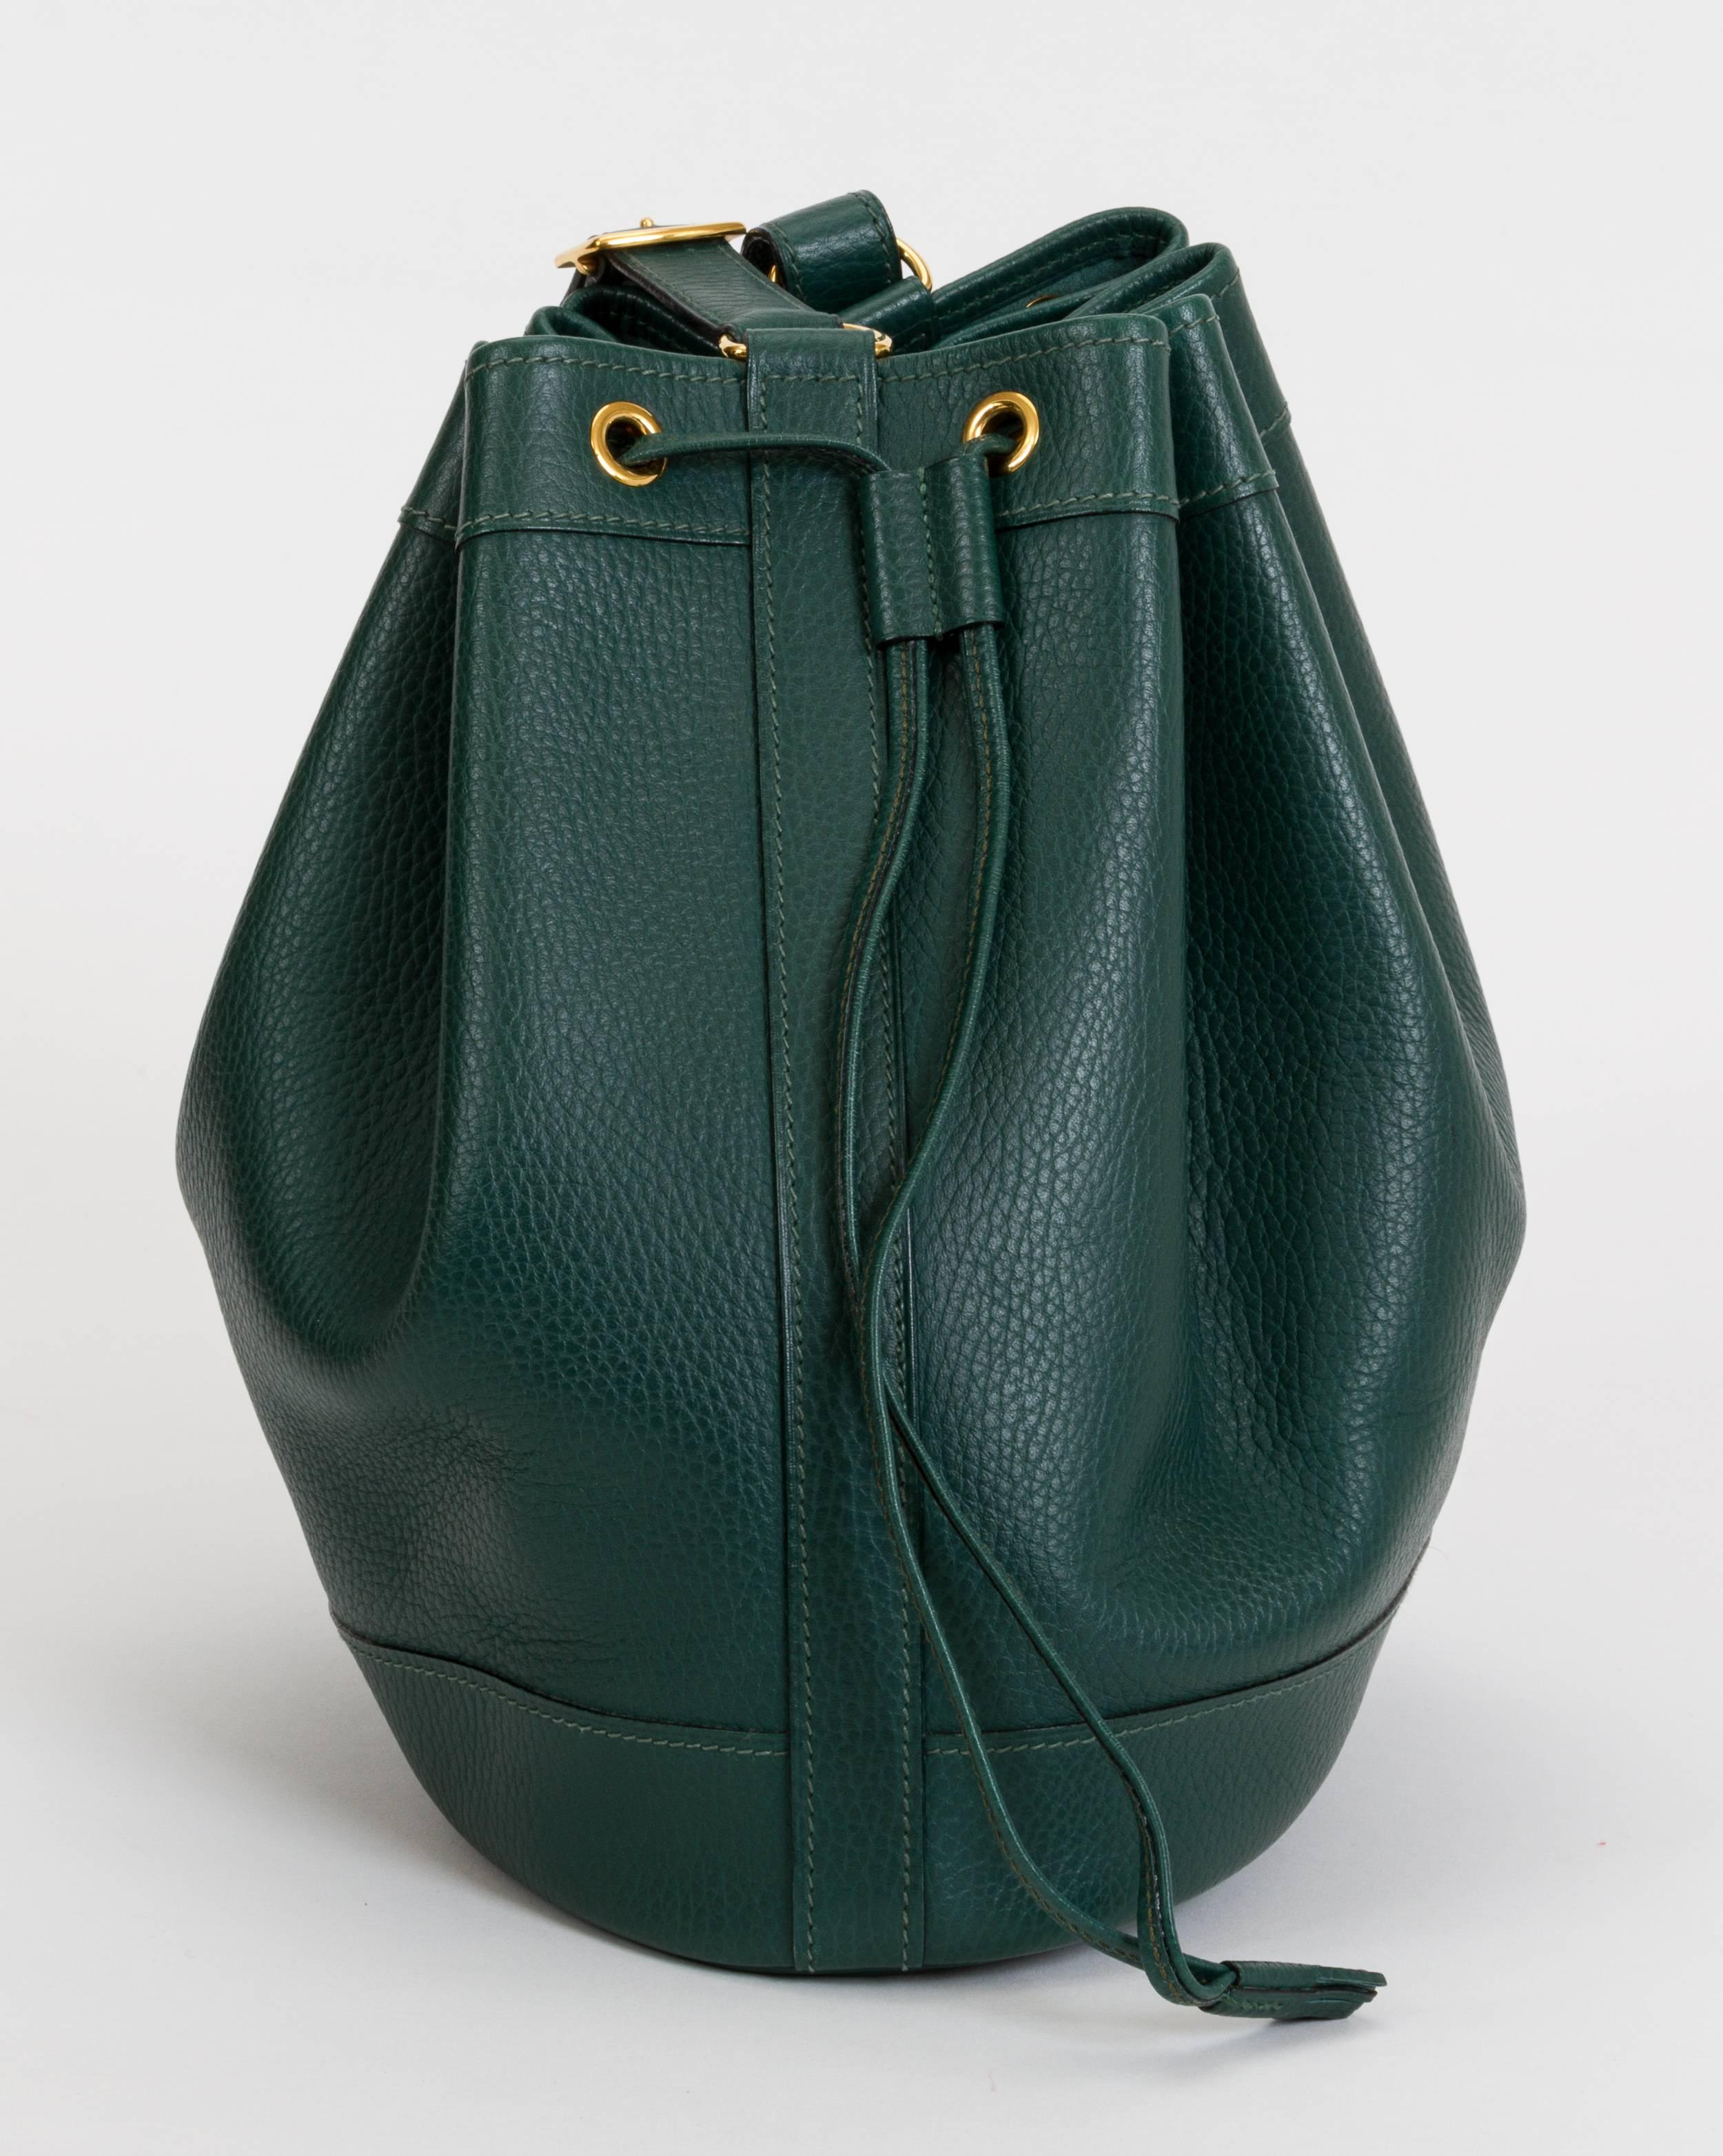 Hermès emerald green Ardennes leather bucket shoulder bag. Date stamp I for 2005. Goldtone hardware. Includes original dust bag. Shoulder drop, 9